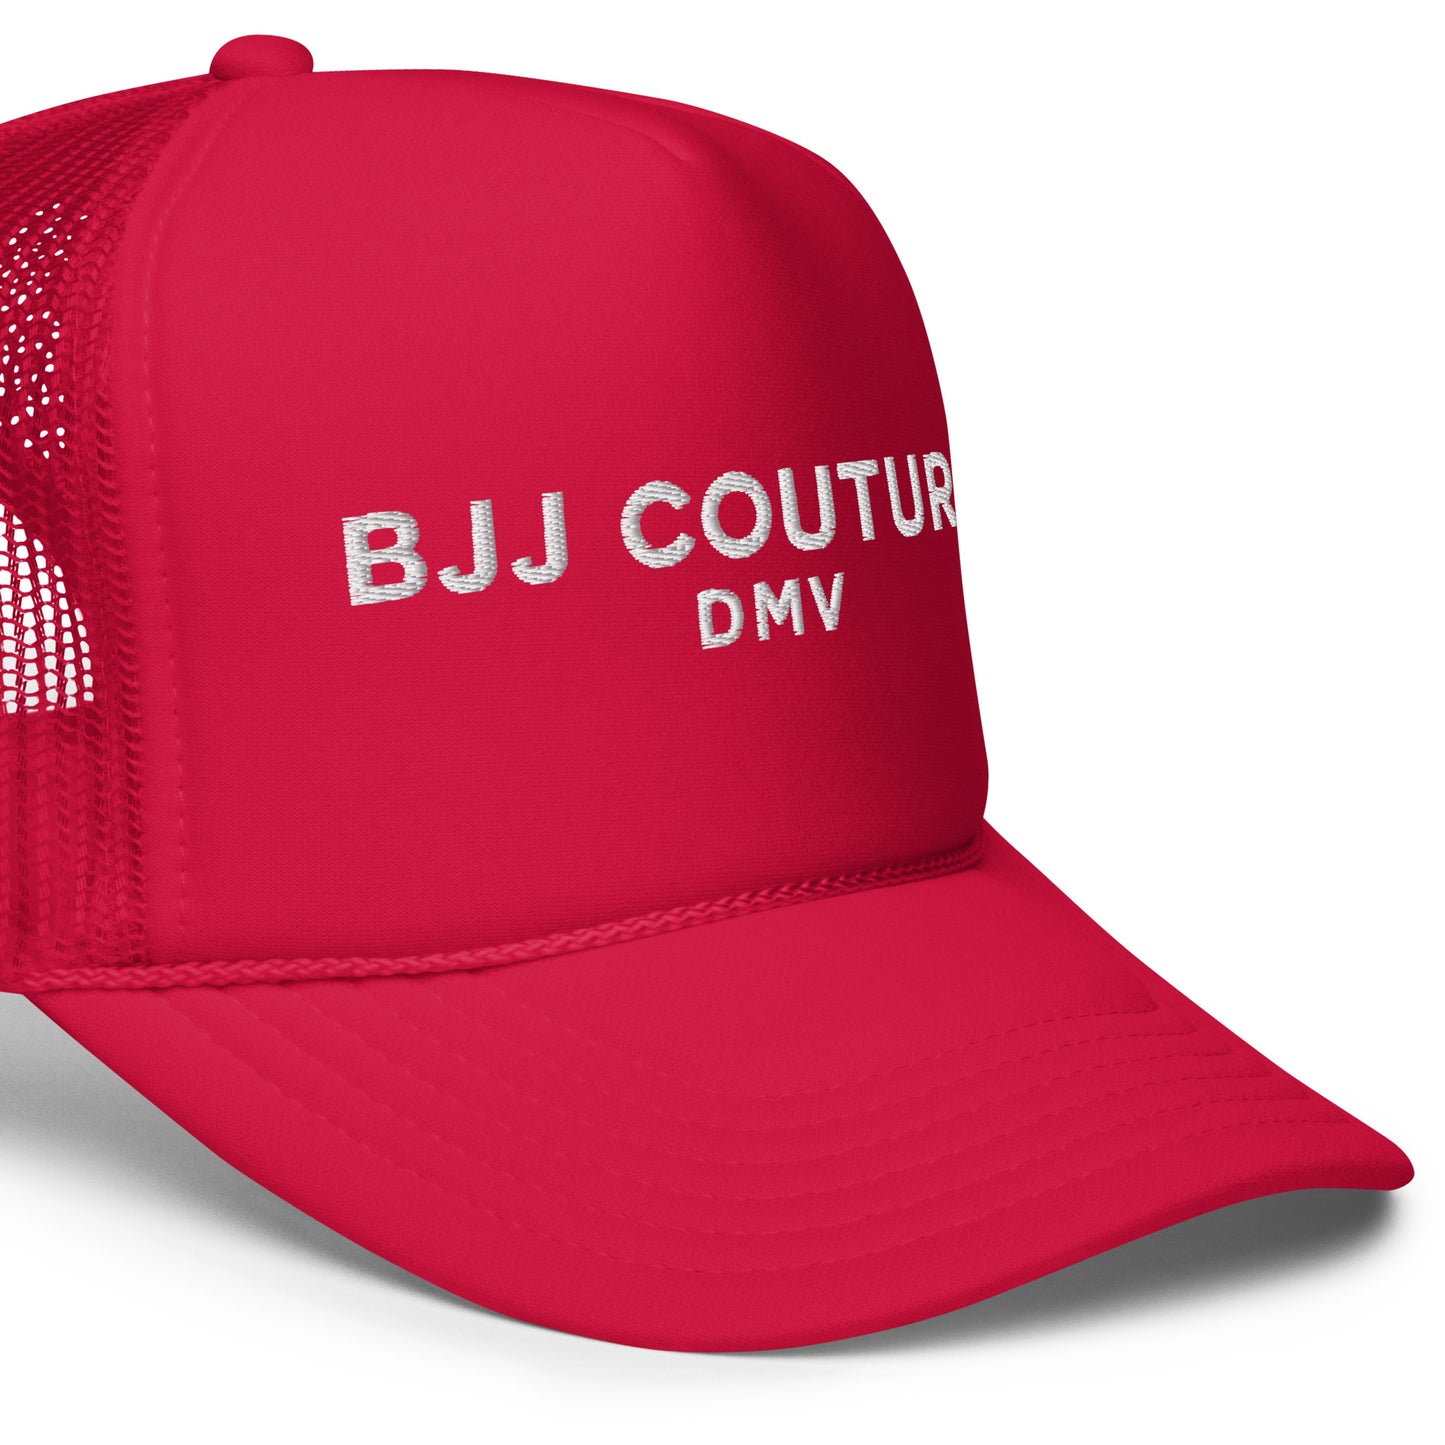 BJJ Couture DMV Foam trucker hat - 6 color ways